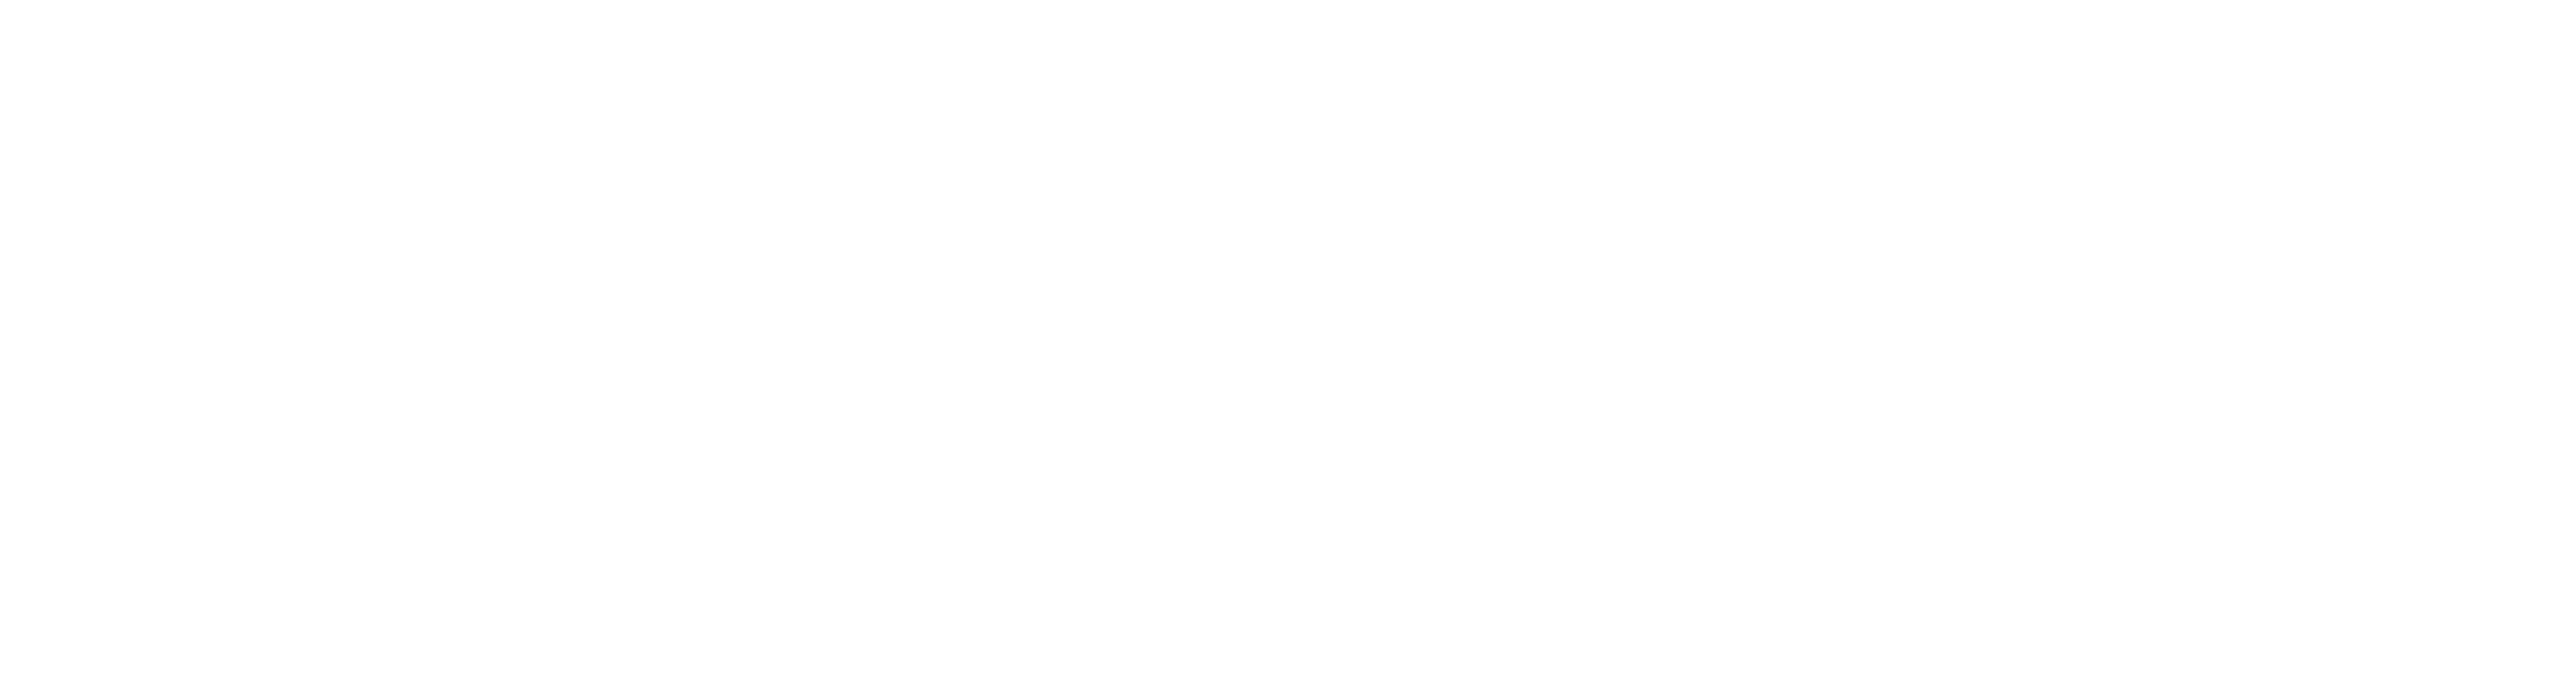 menu_delivery-w